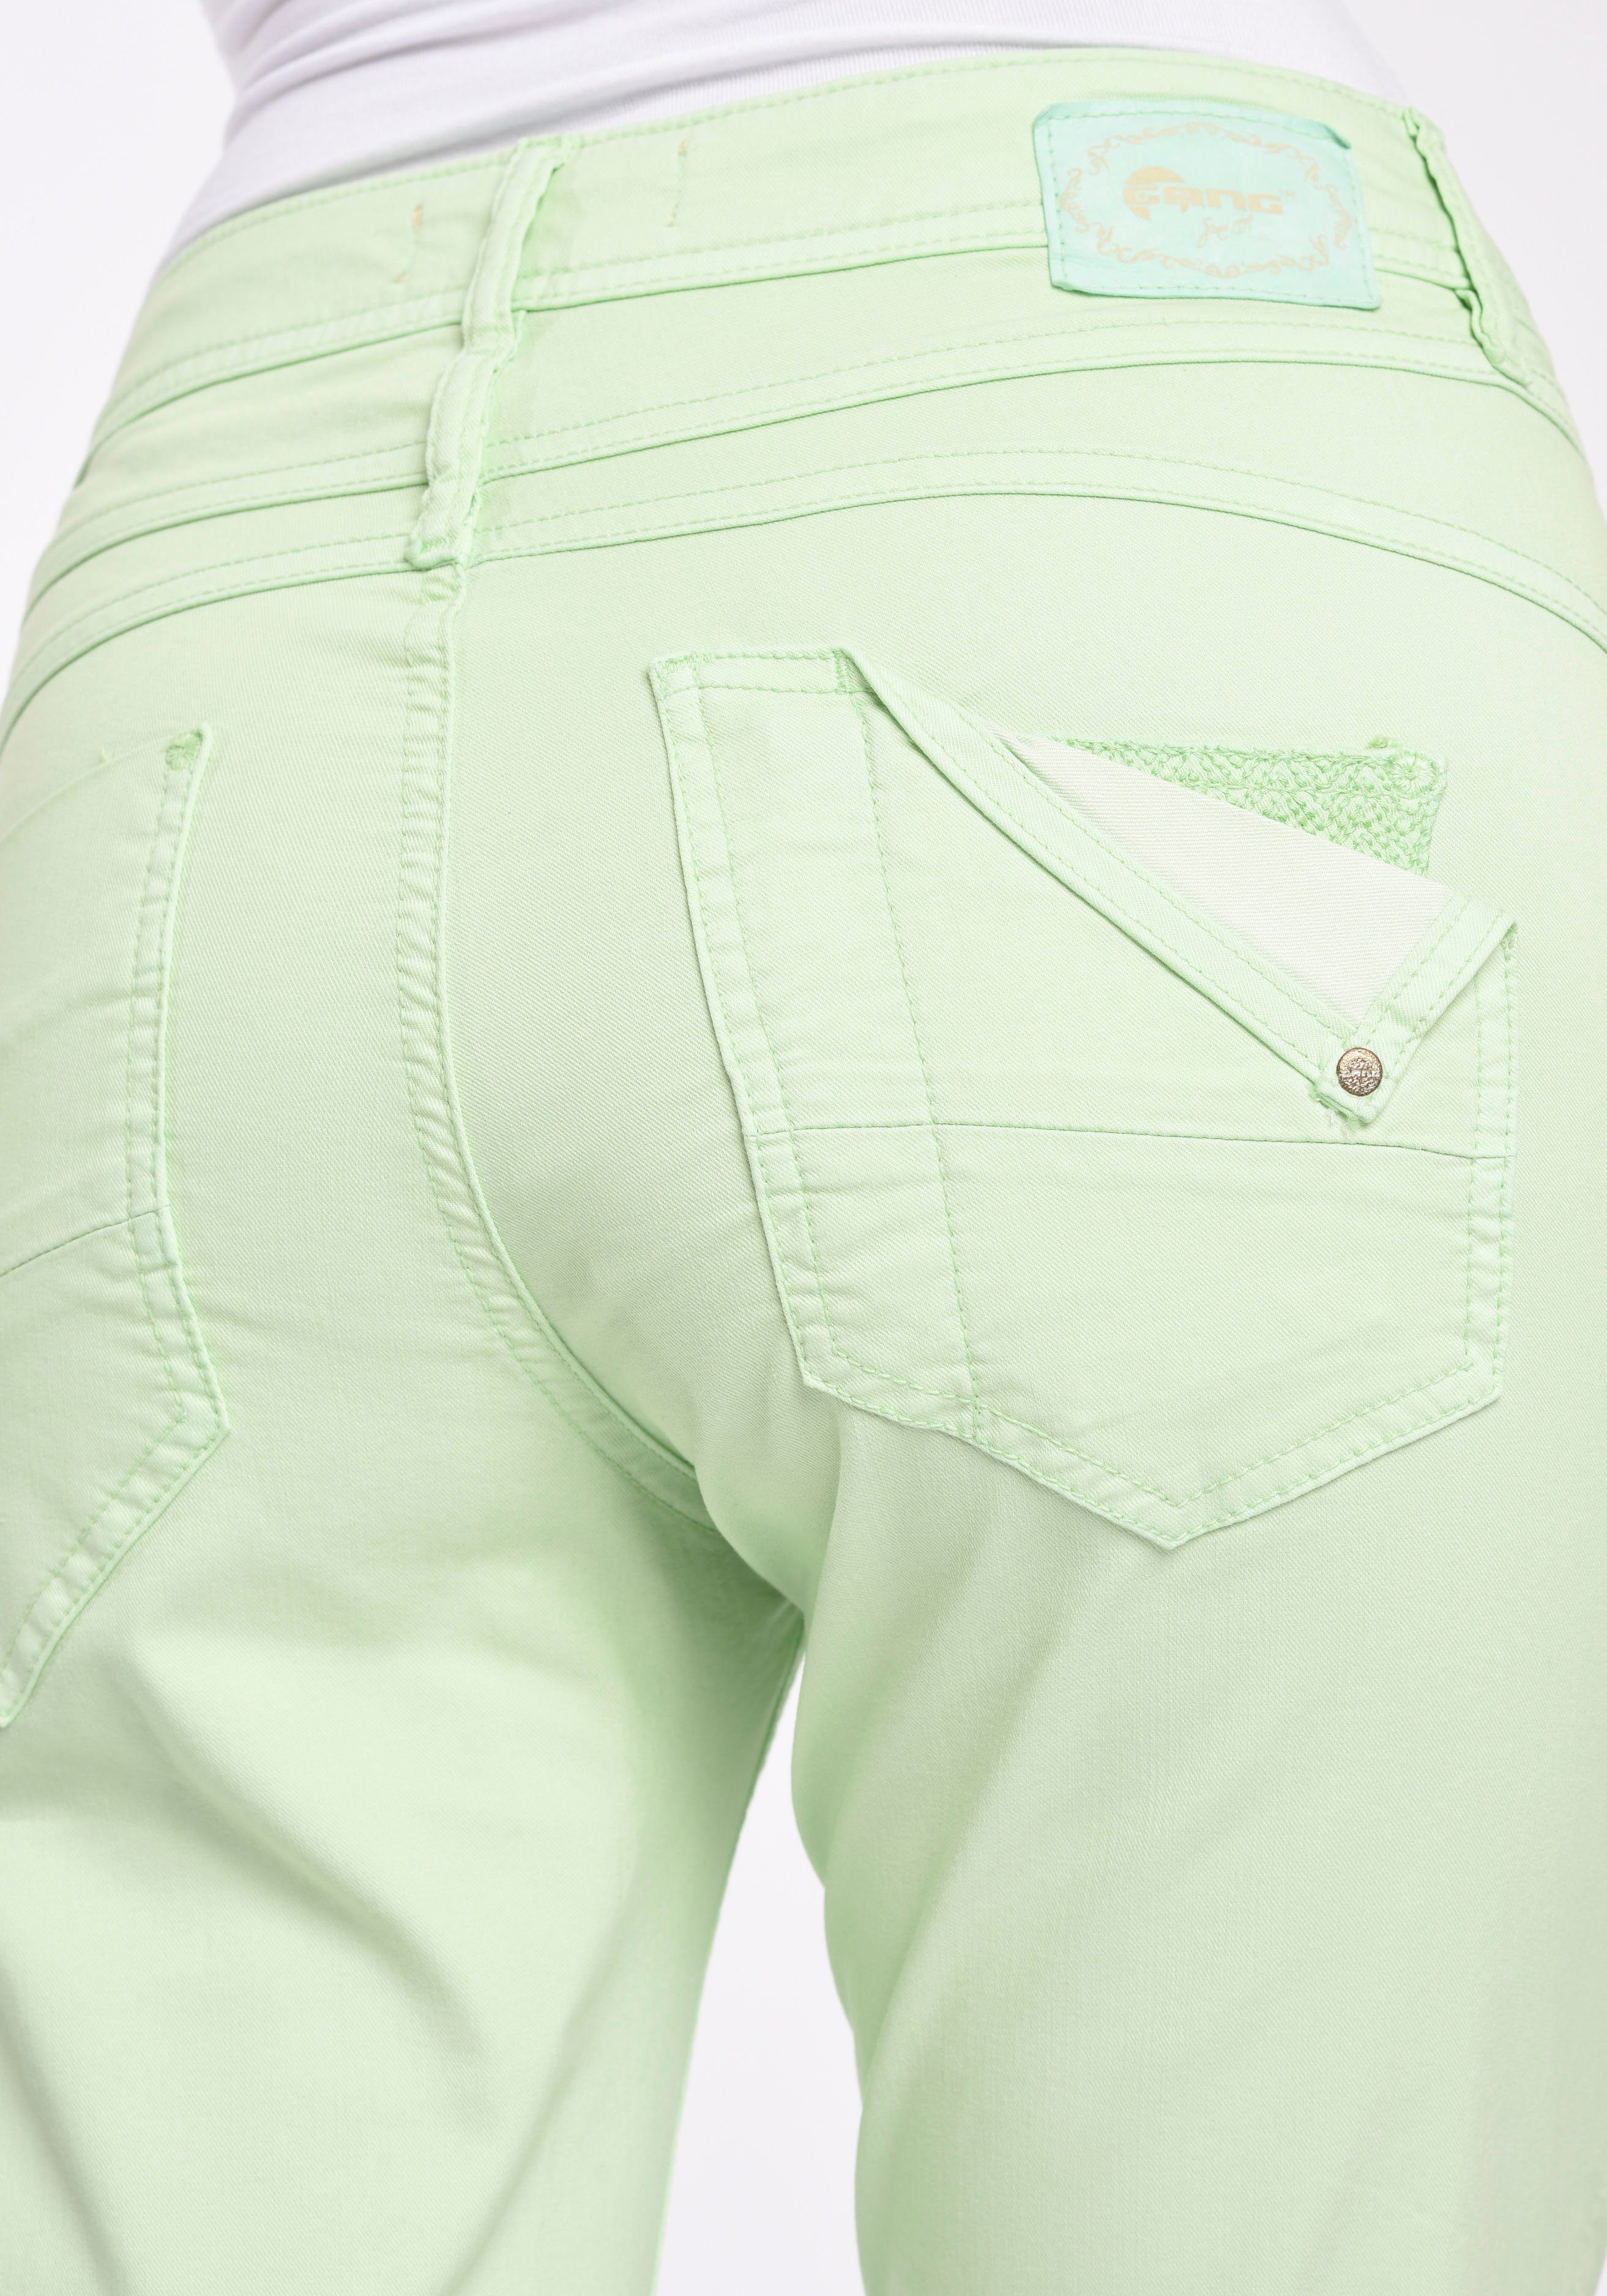 94AMELIE verkürzter GANG Style 5-Pocket-Hose CROPPED Beinlänge pastel 5-Pocket green bijou mit modisch